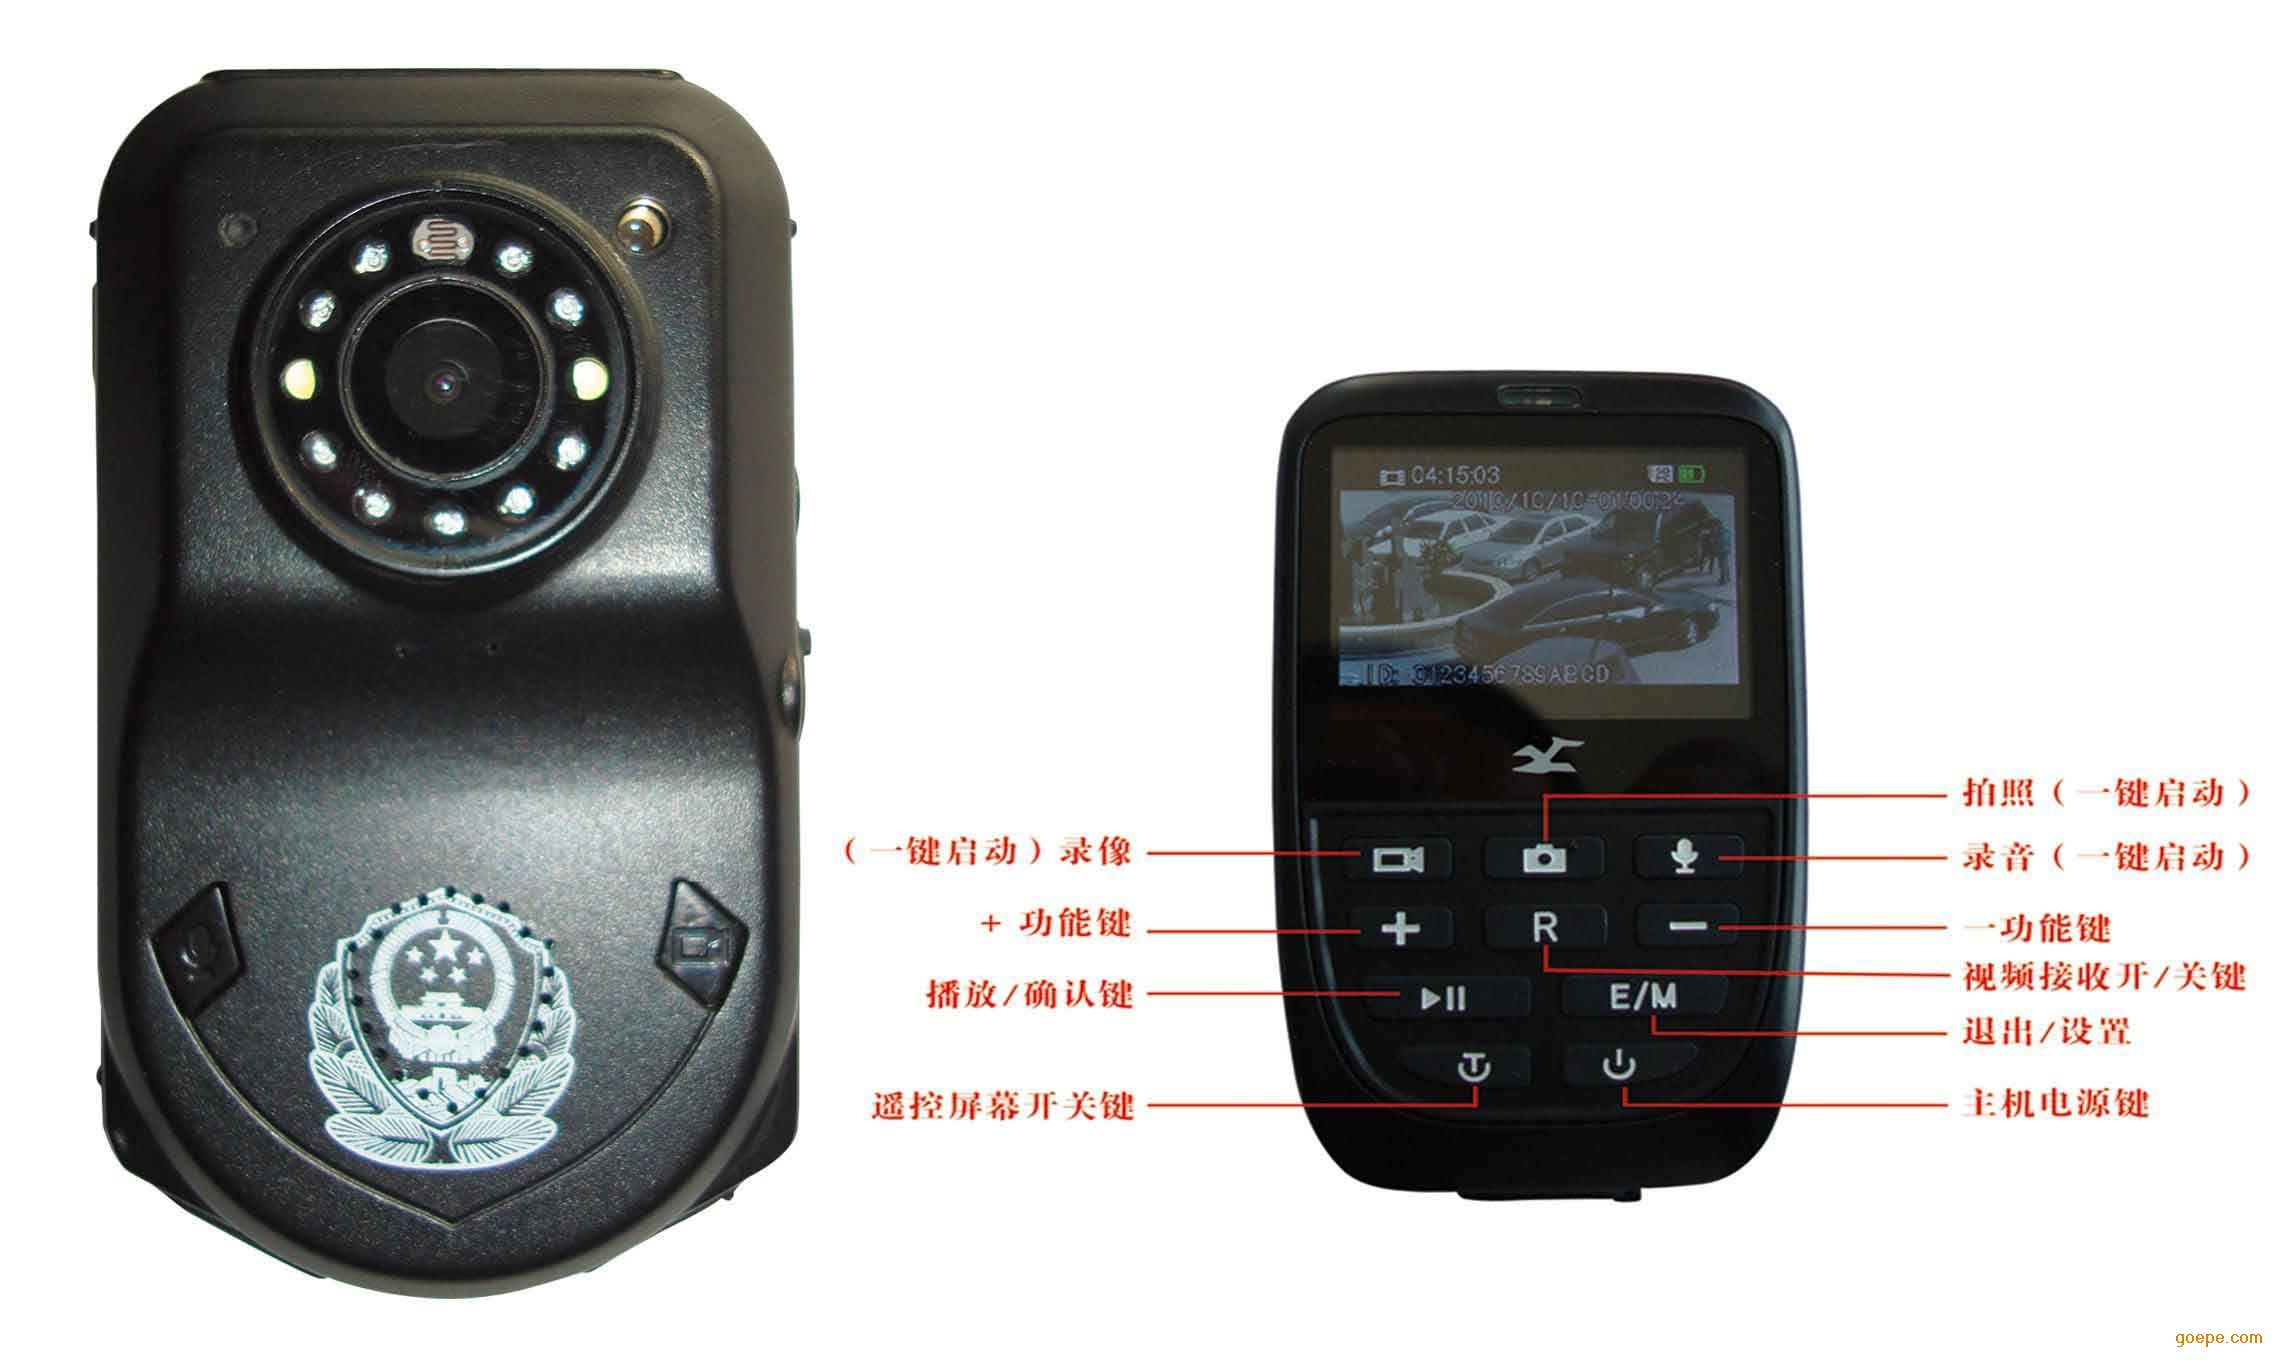 雄视天下DSJ-A8 GPS型执法记录仪